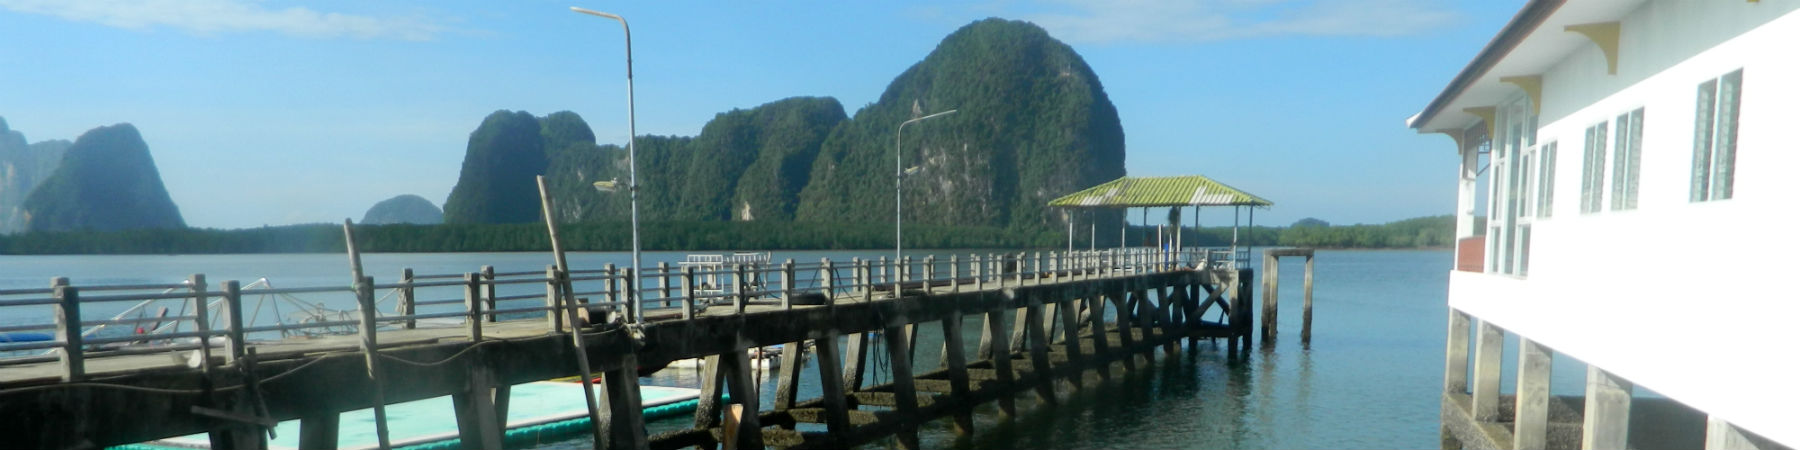 The Pier at Koh Panyee, Phang Nga Province